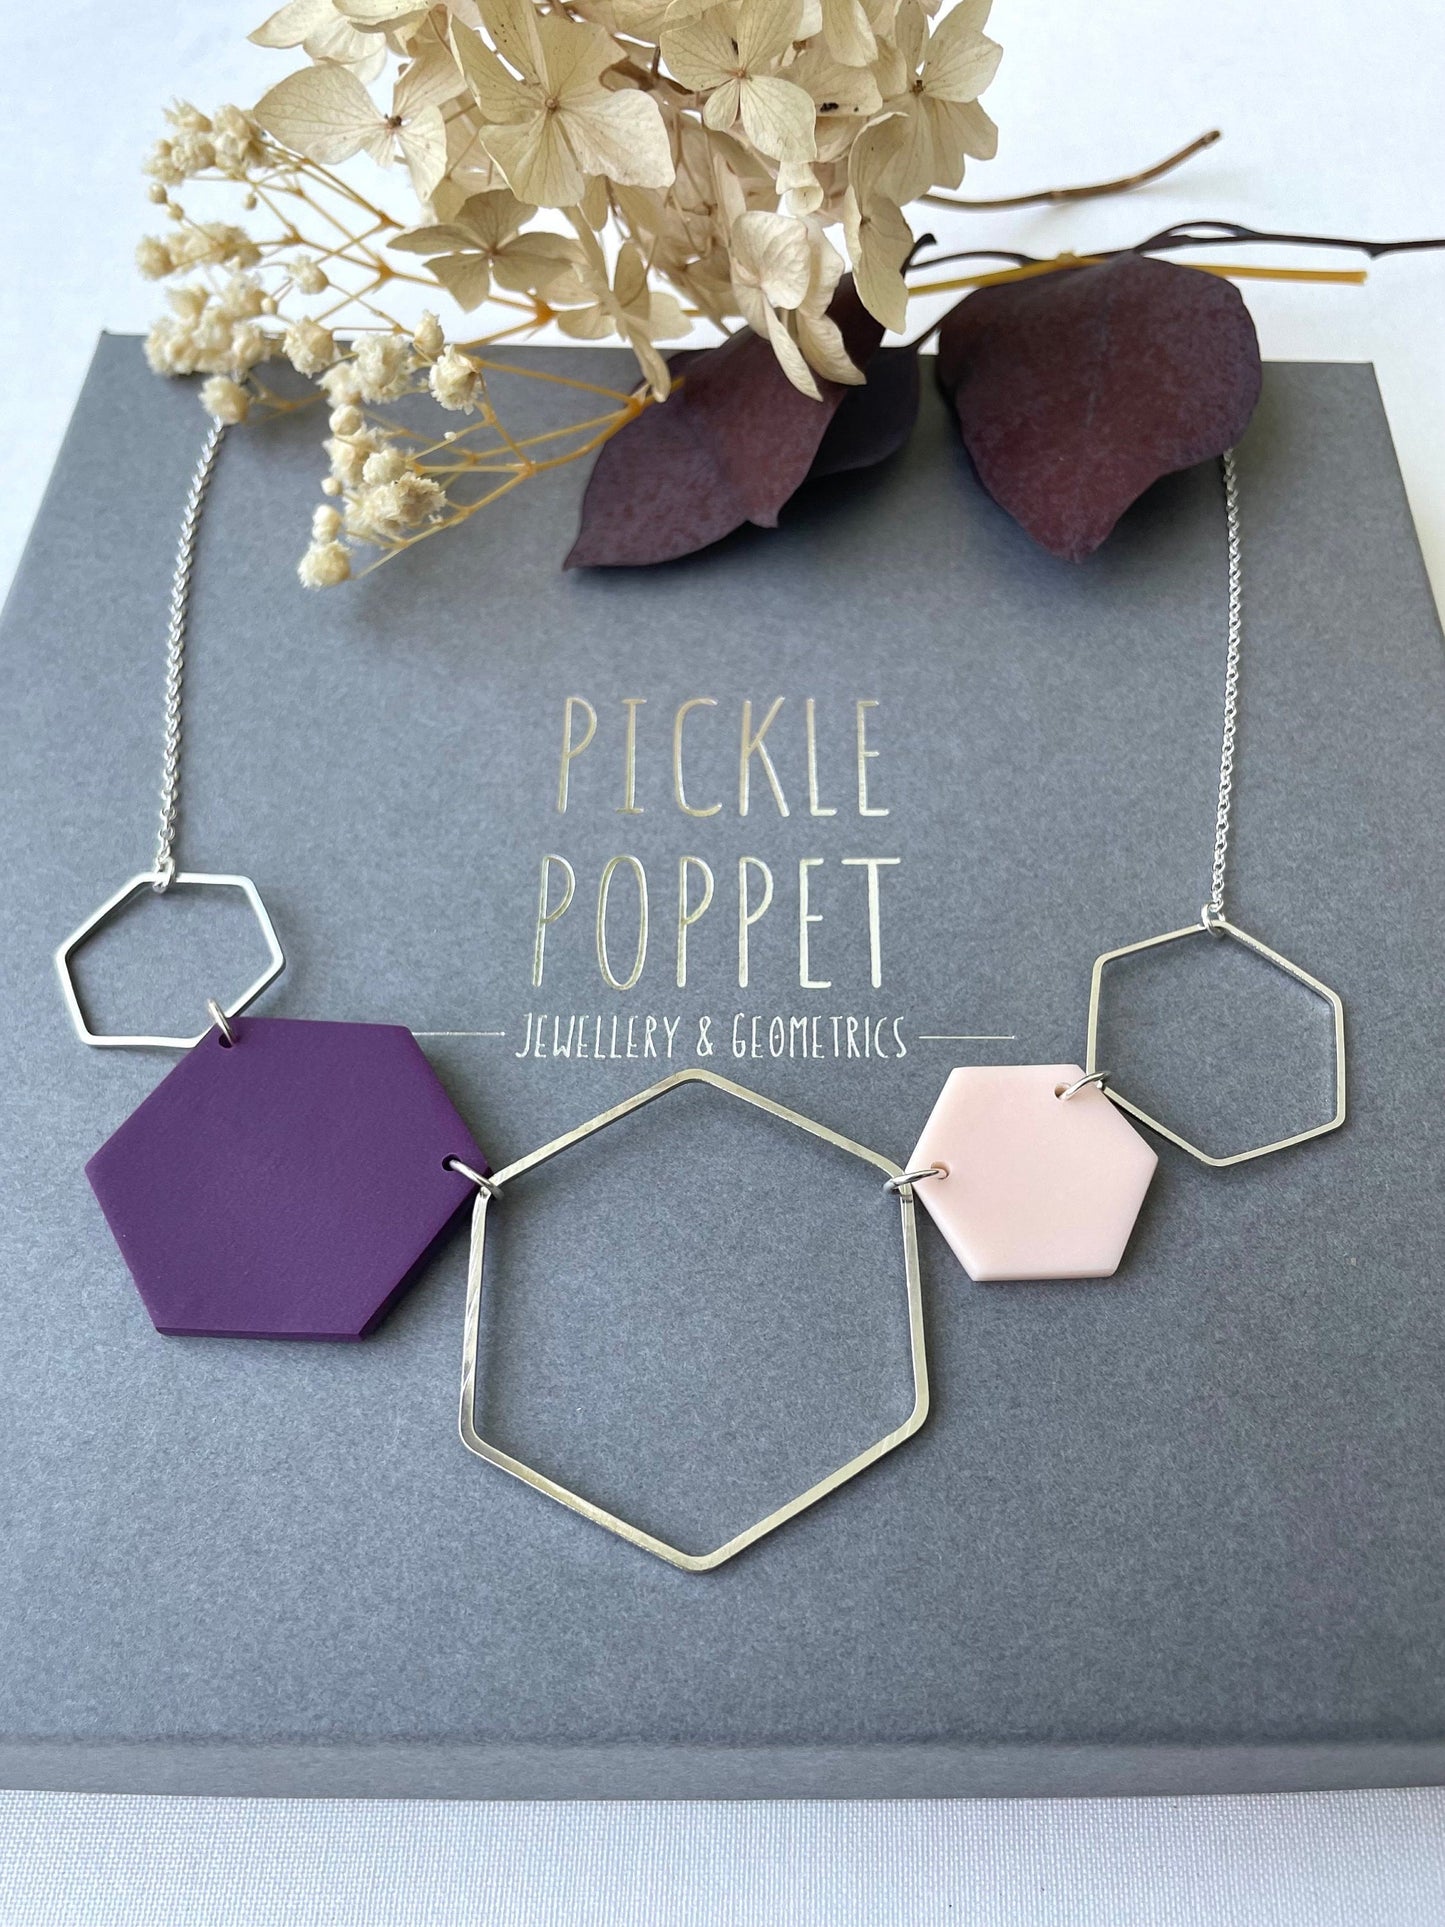 Silver Hexagon Statement Necklace - Purple & Blush Pink